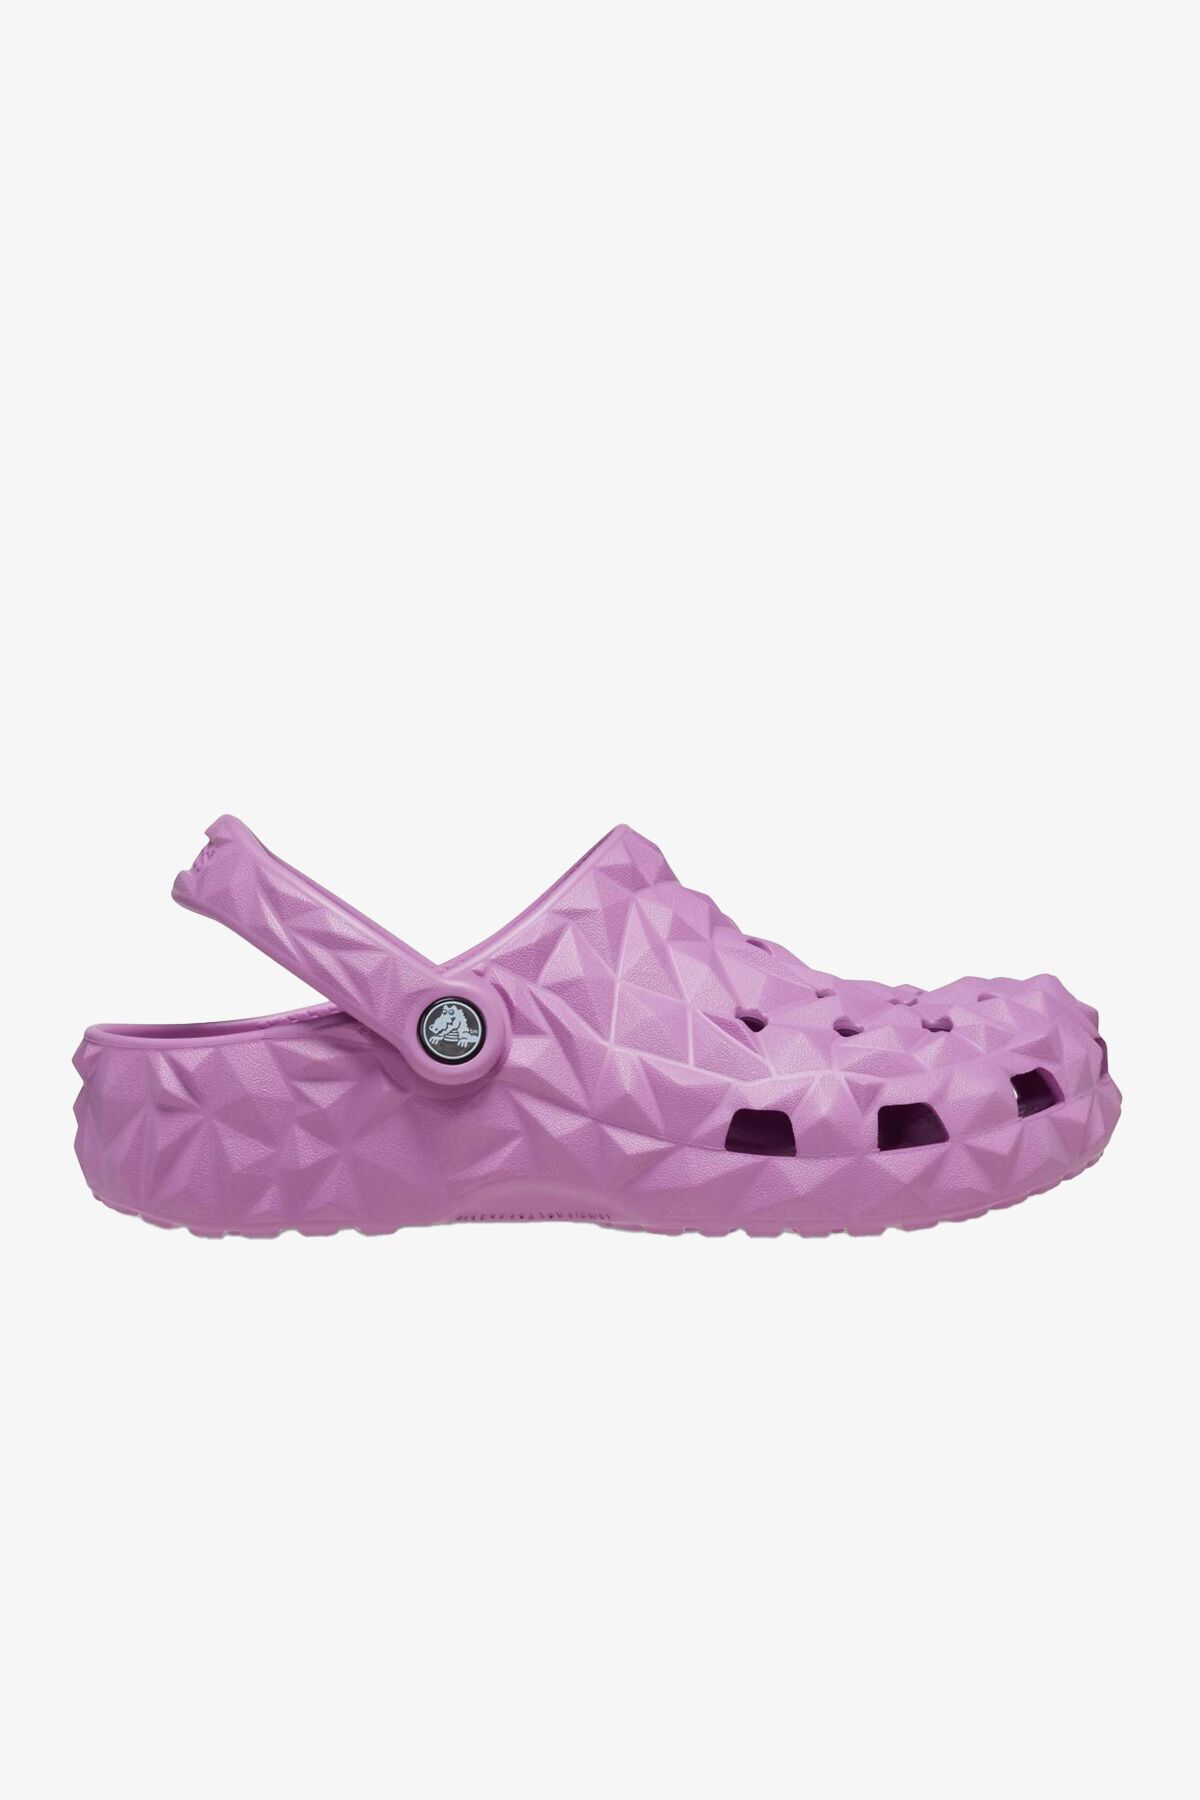 Crocs Classic Heometric Clog Unisex Pink Slipper 209563-6WQ